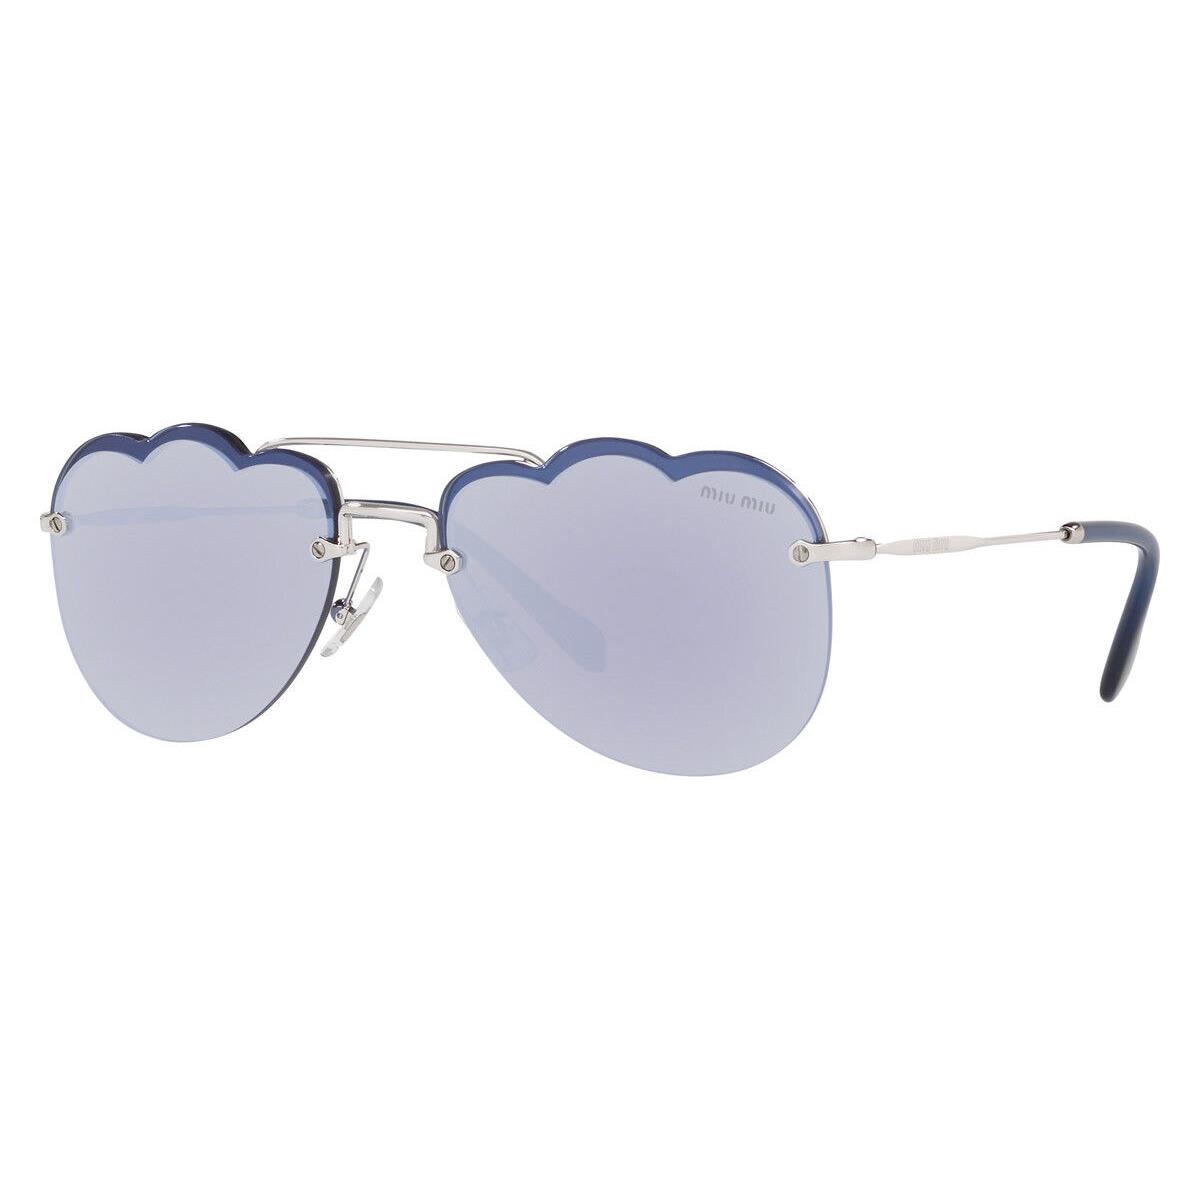 Miu Miu MU 56US Sunglasses Women Silver Geometric 58mm